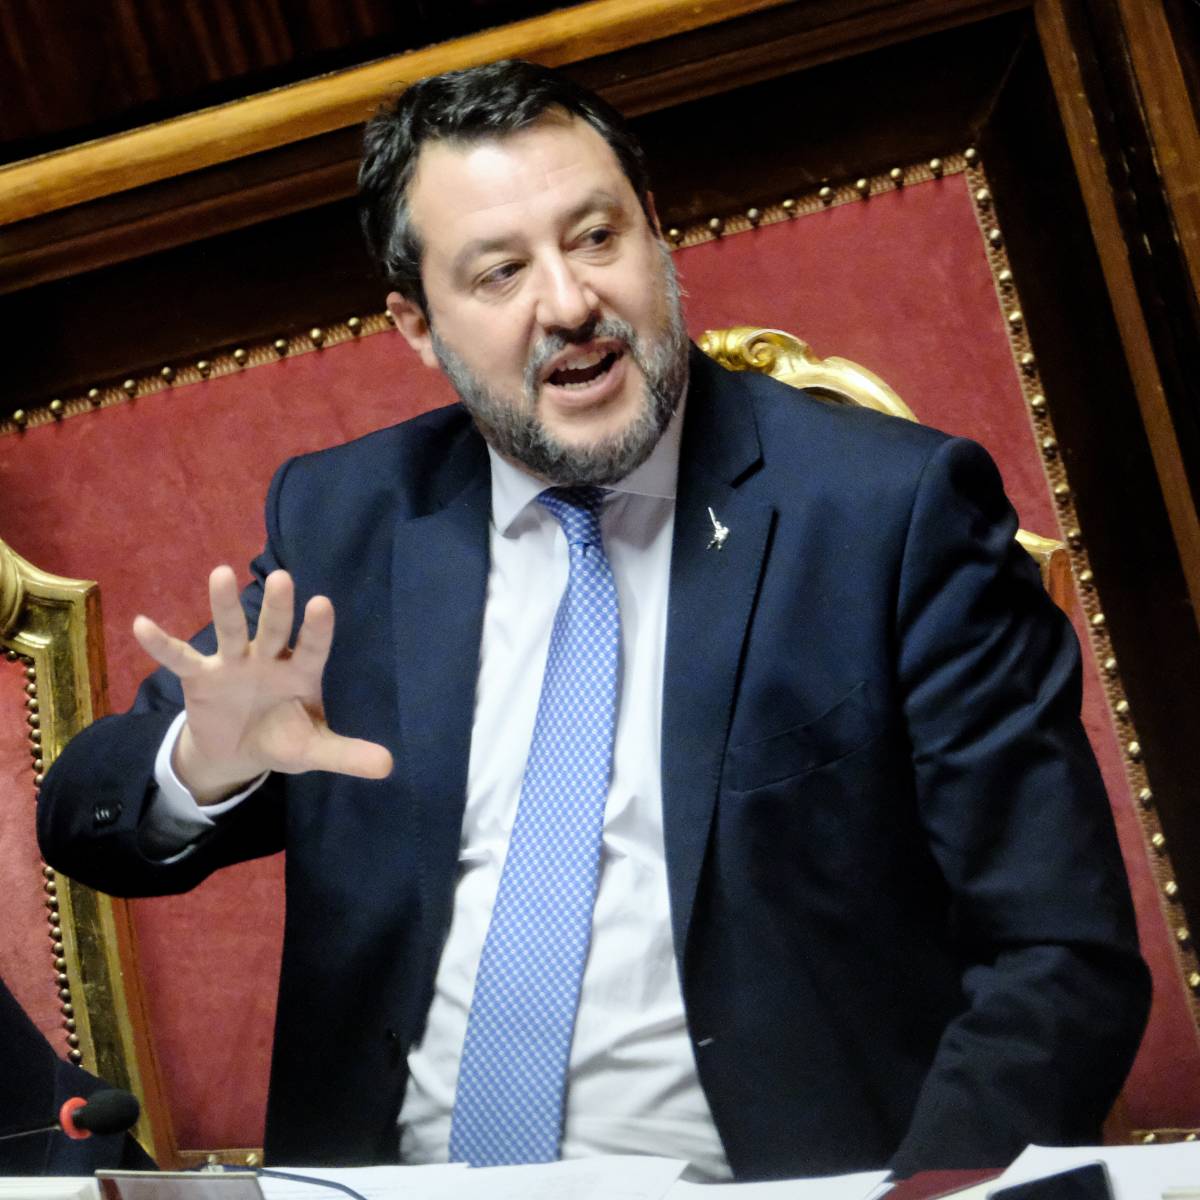 "Chiarisca rapporti con la Russia": ma contro Salvini la sinistra ha la pistola scarica